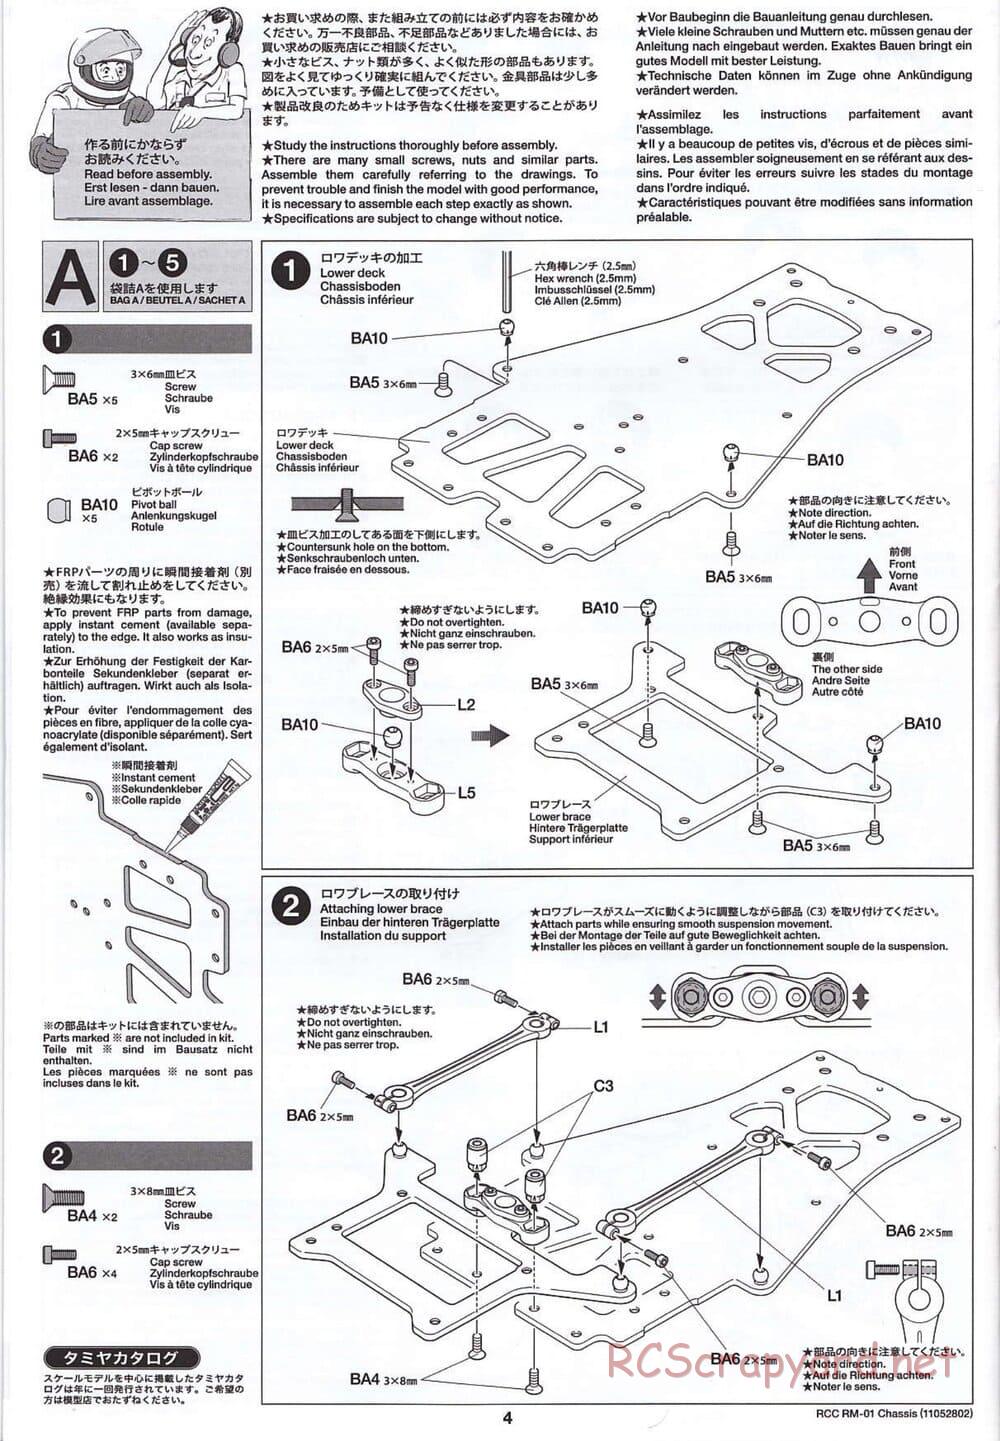 Tamiya - TA04-SS Chassis - Manual - Page 4